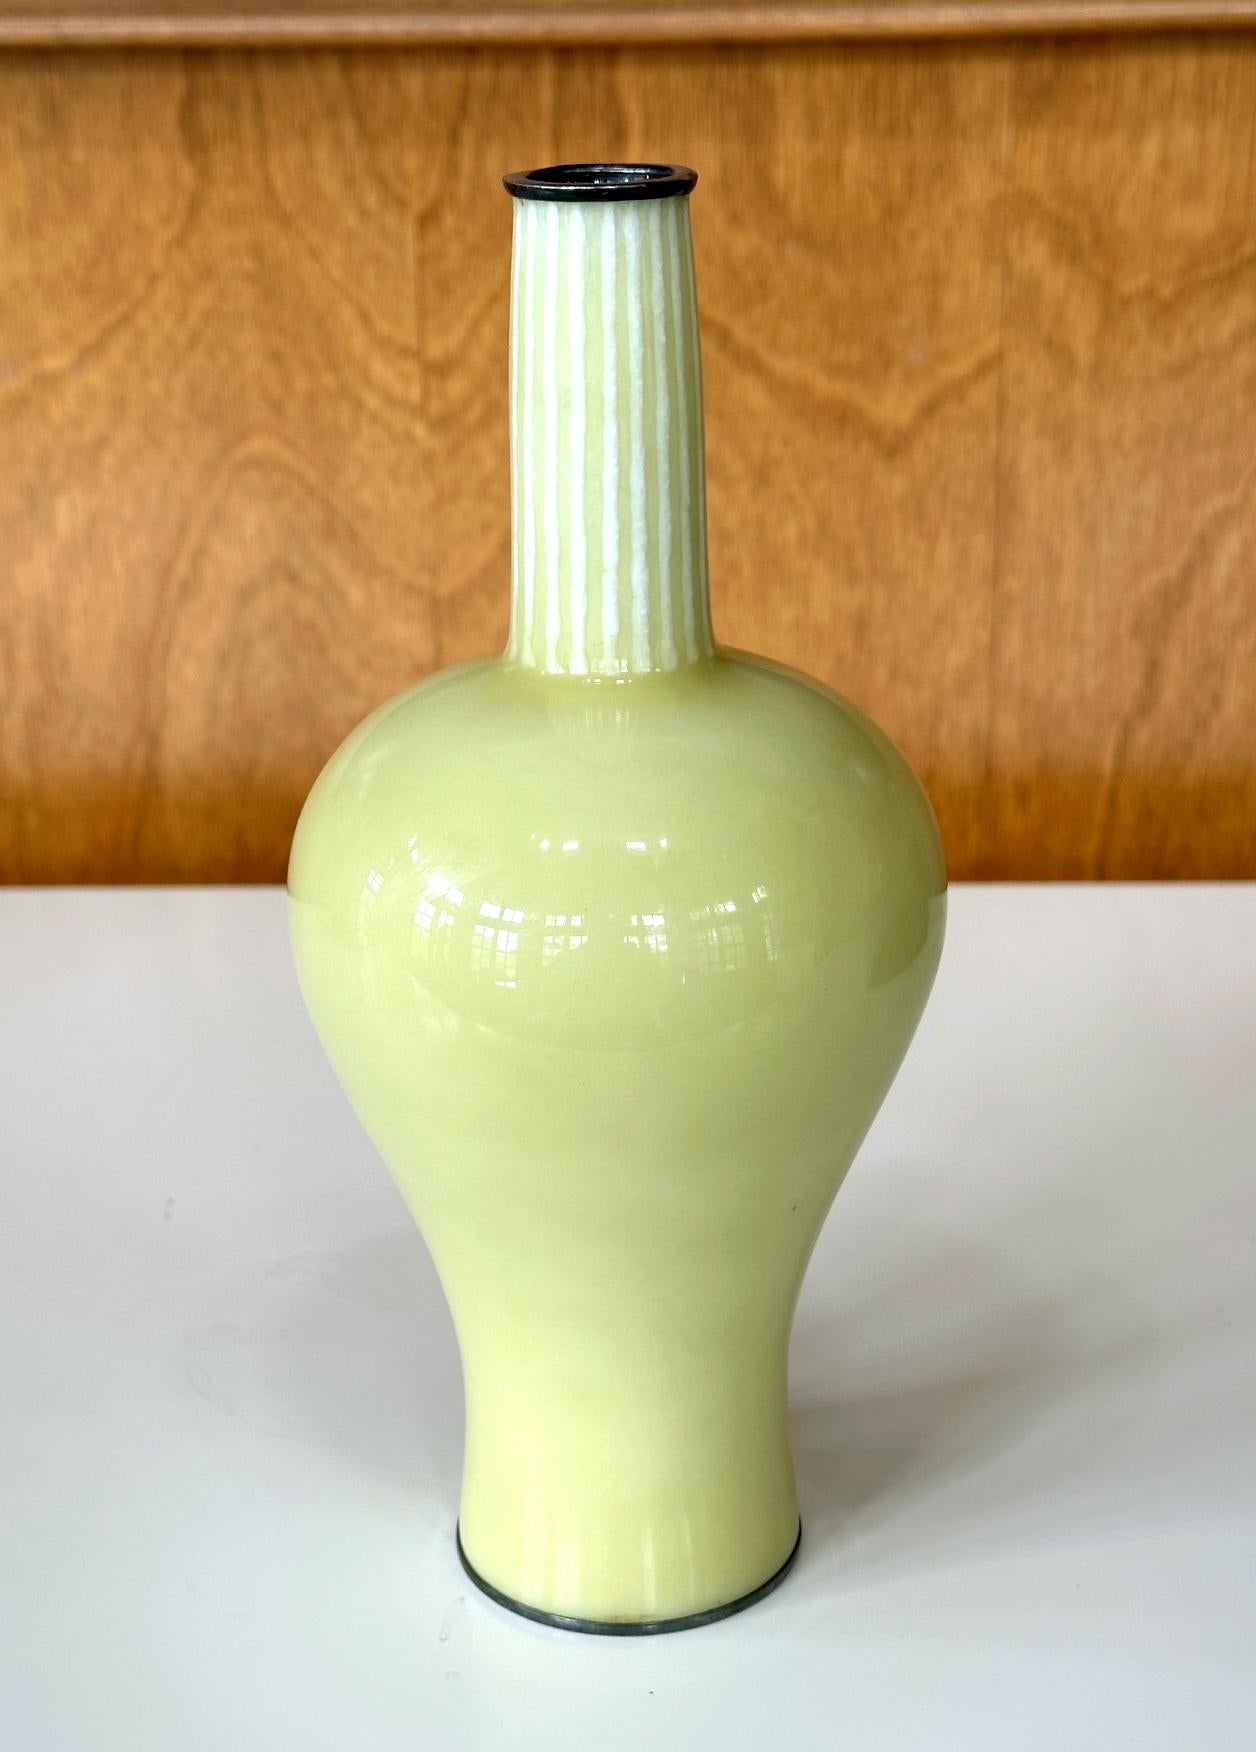 Japanische Cloisonné-Vase in Flaschenform von Ando Jubei (1876-1963), um 1910-20 (späte Meiji- bis Taisho-Periode). Die Vase hat eine völlig glatte Oberfläche, auf der kein Draht zu sehen ist. Die Technik ist im Japanischen als Musen (versteckter